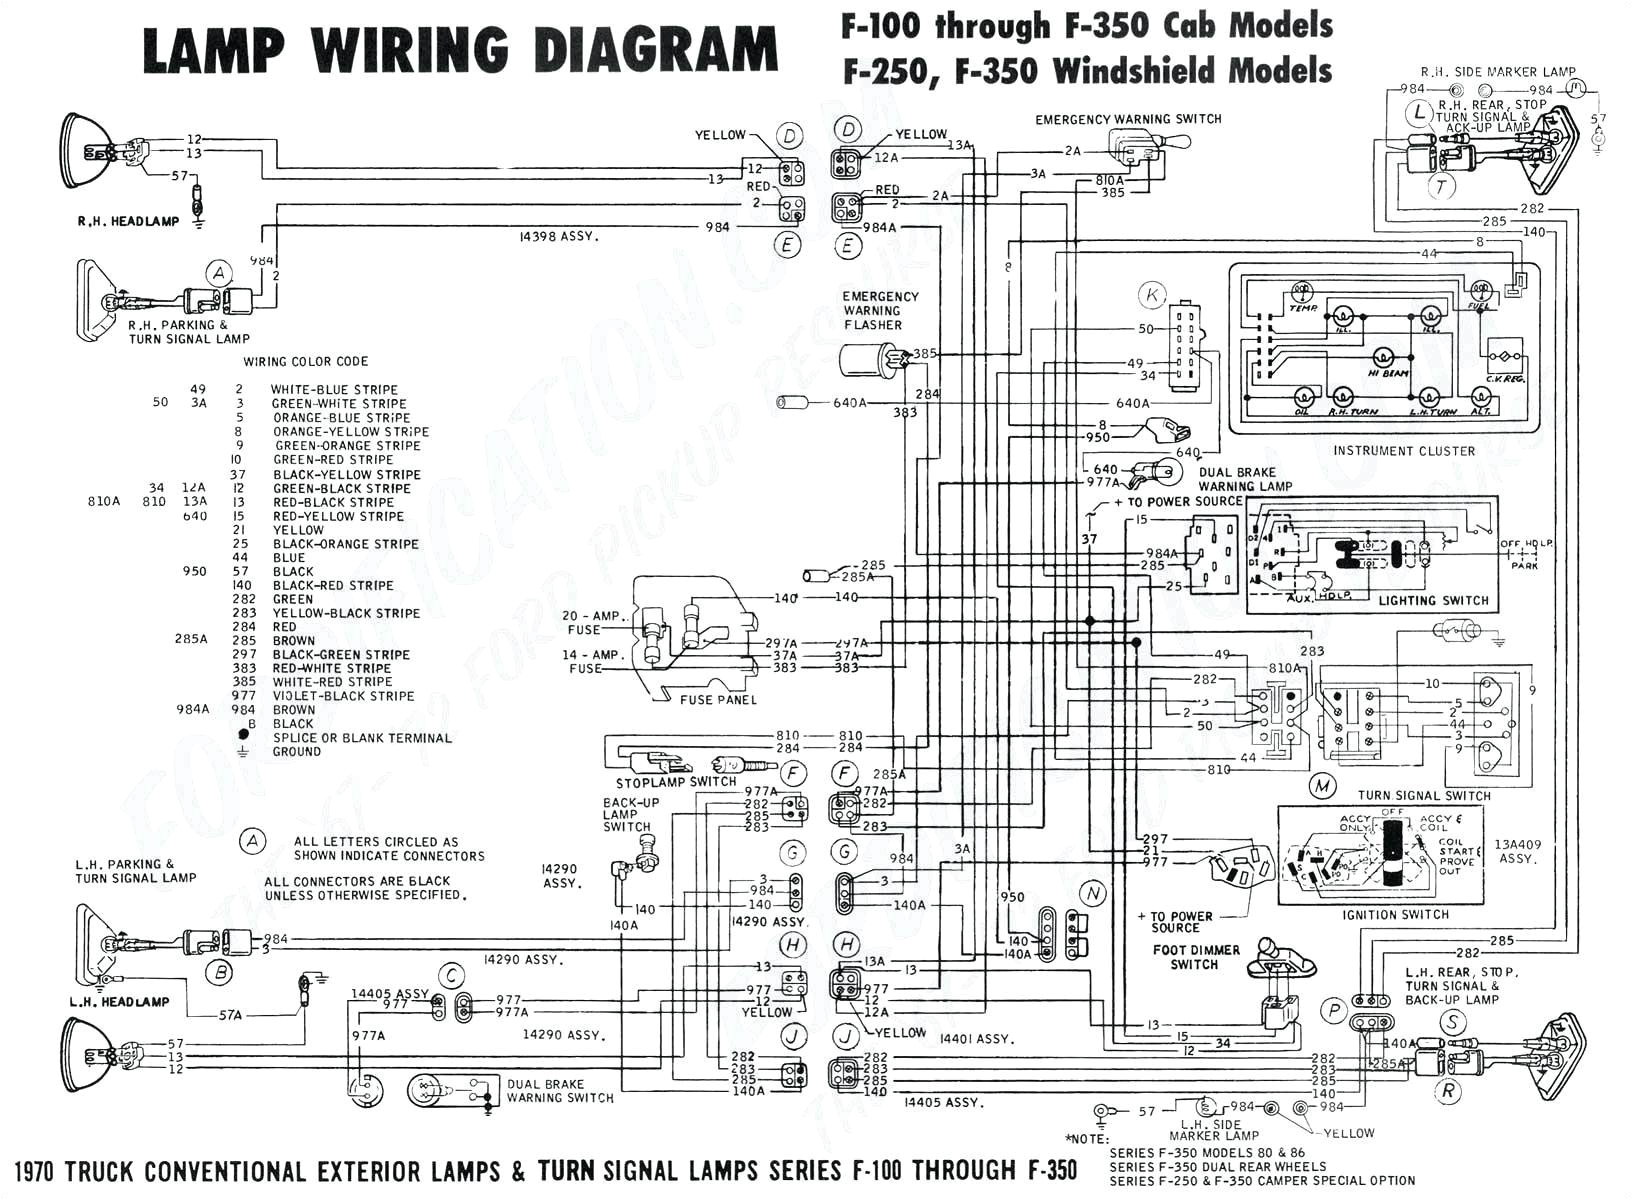 autometer tach wiring diagram fresh wiring pics of autometer tach wiring diagram unique vdo pyrometer wiring